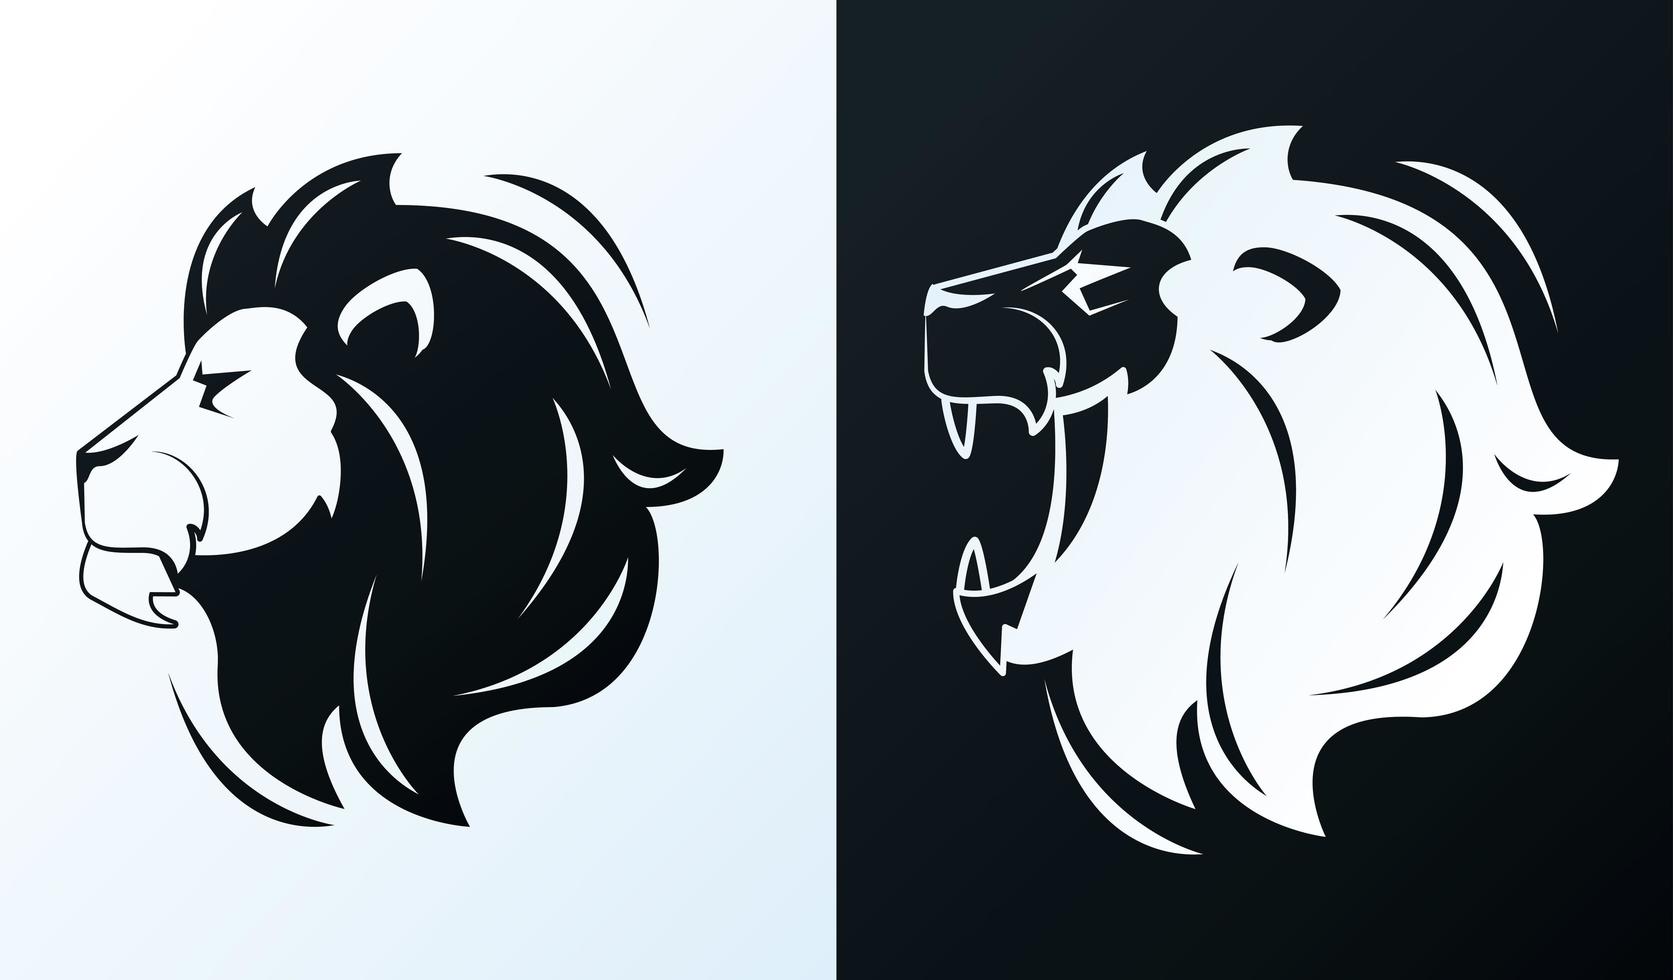 hoofden van leeuwen in profiel, zwart-wit pictogrammen vector